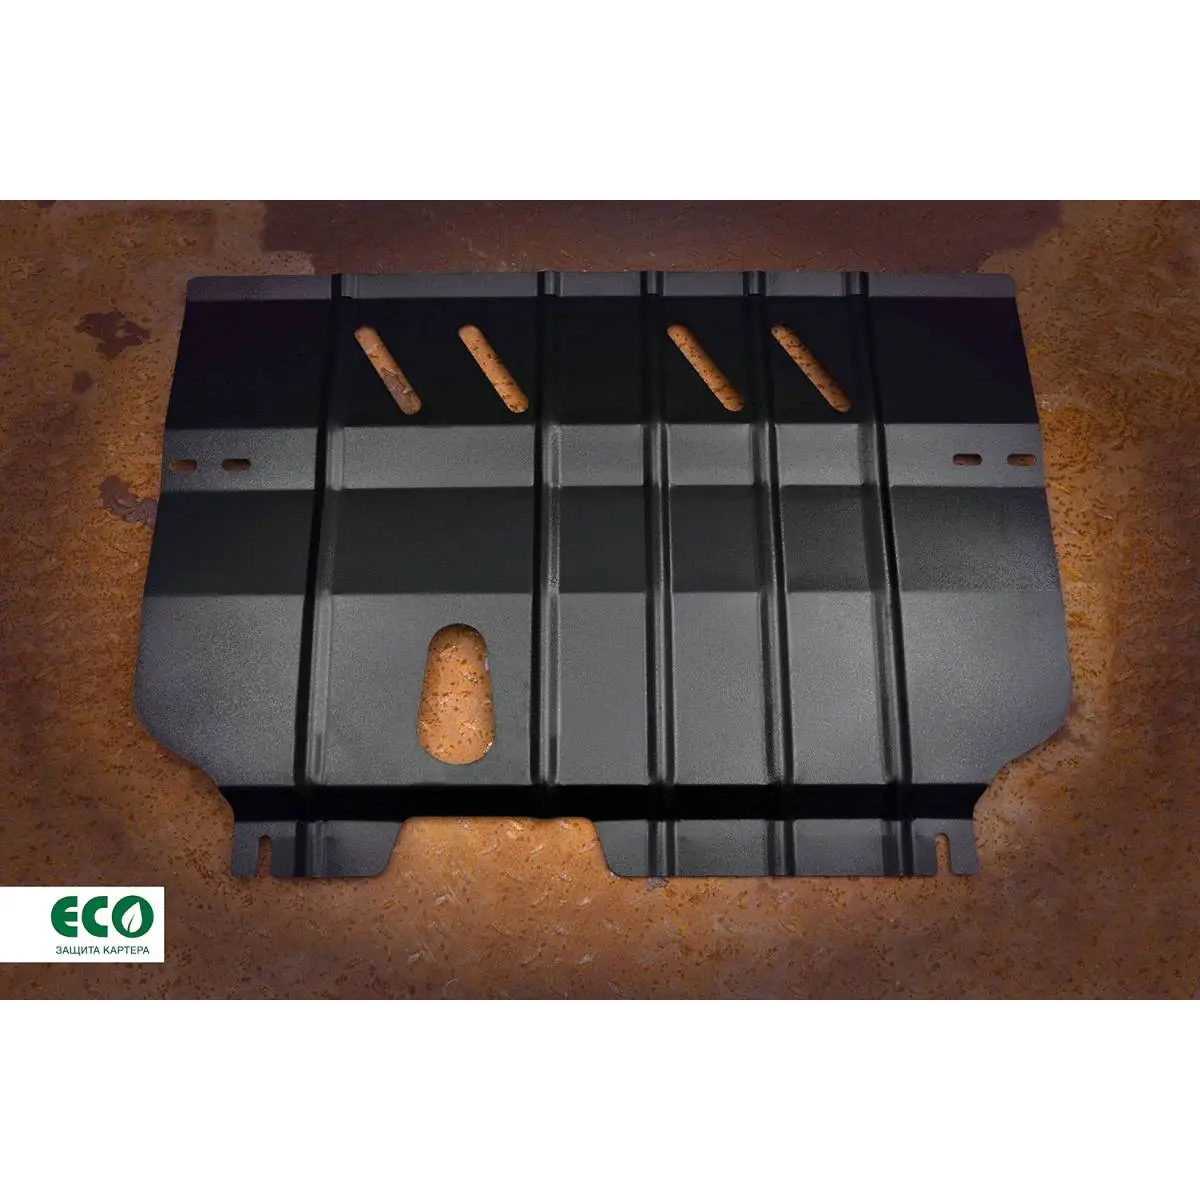 Комплект крепежа защиты радиатора Eco H0I9 LR eco9903322 E1OKY 1437099151 изображение 4